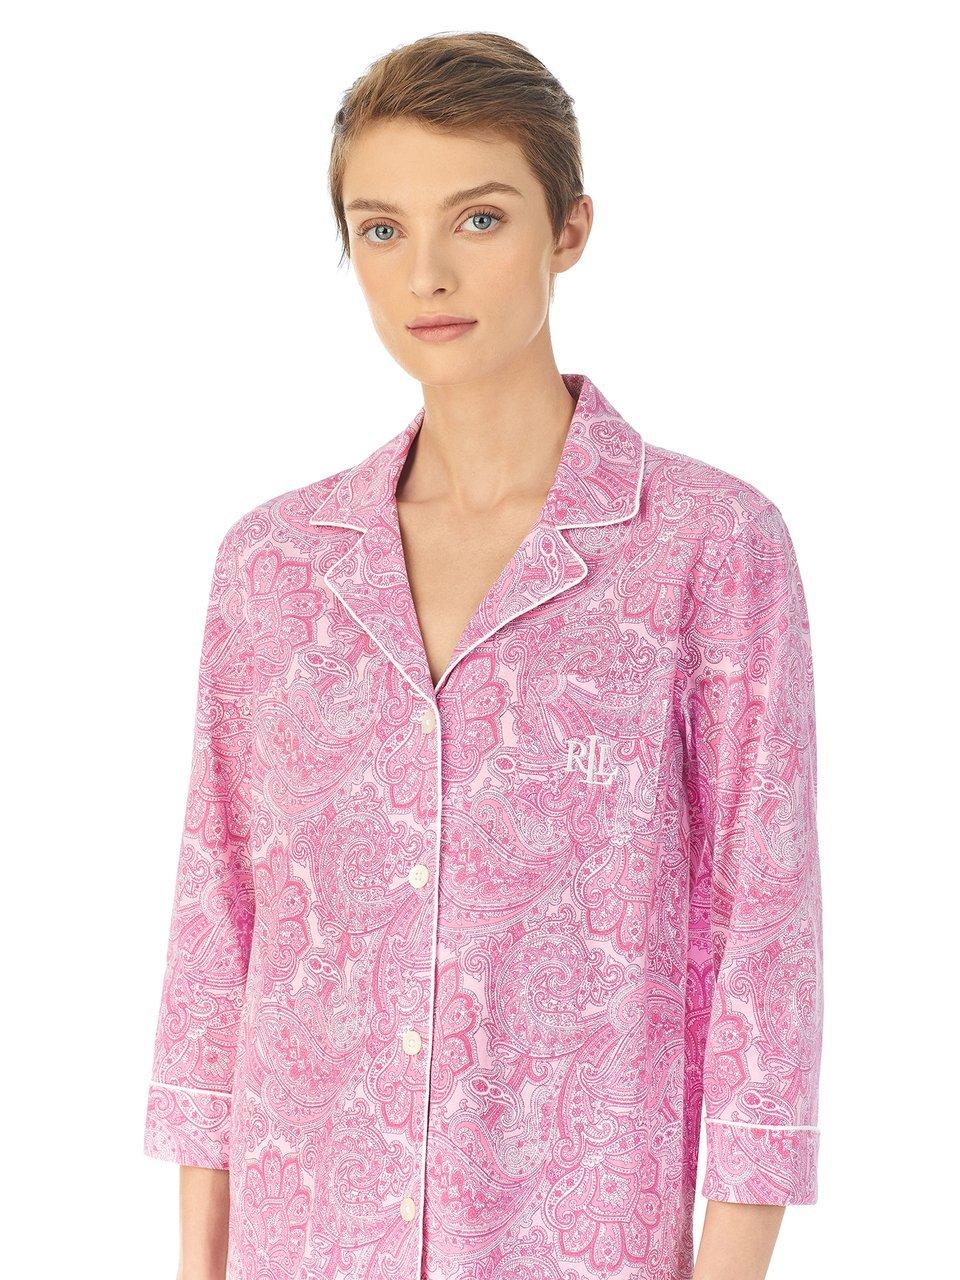 Pyjama Van Lauren Ralph Lauren pink